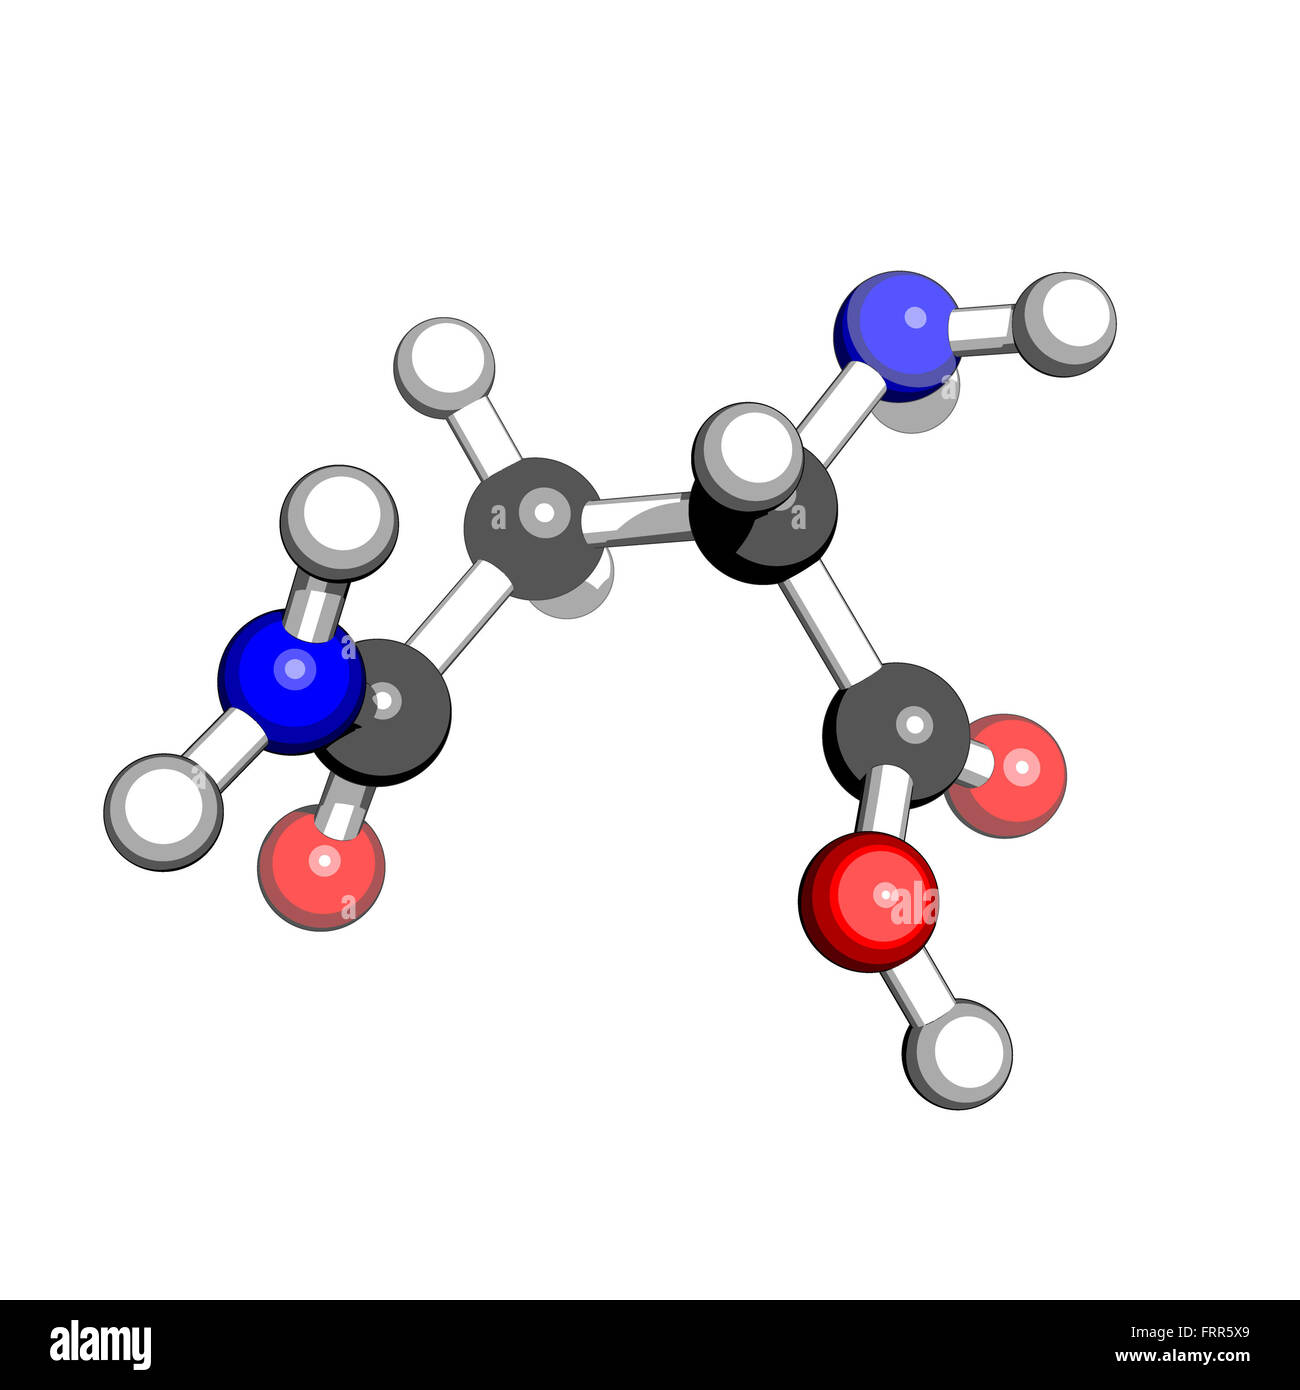 Aminosäure Asparagin molekulare Struktur auf einem weißen Hintergrund Stockfoto